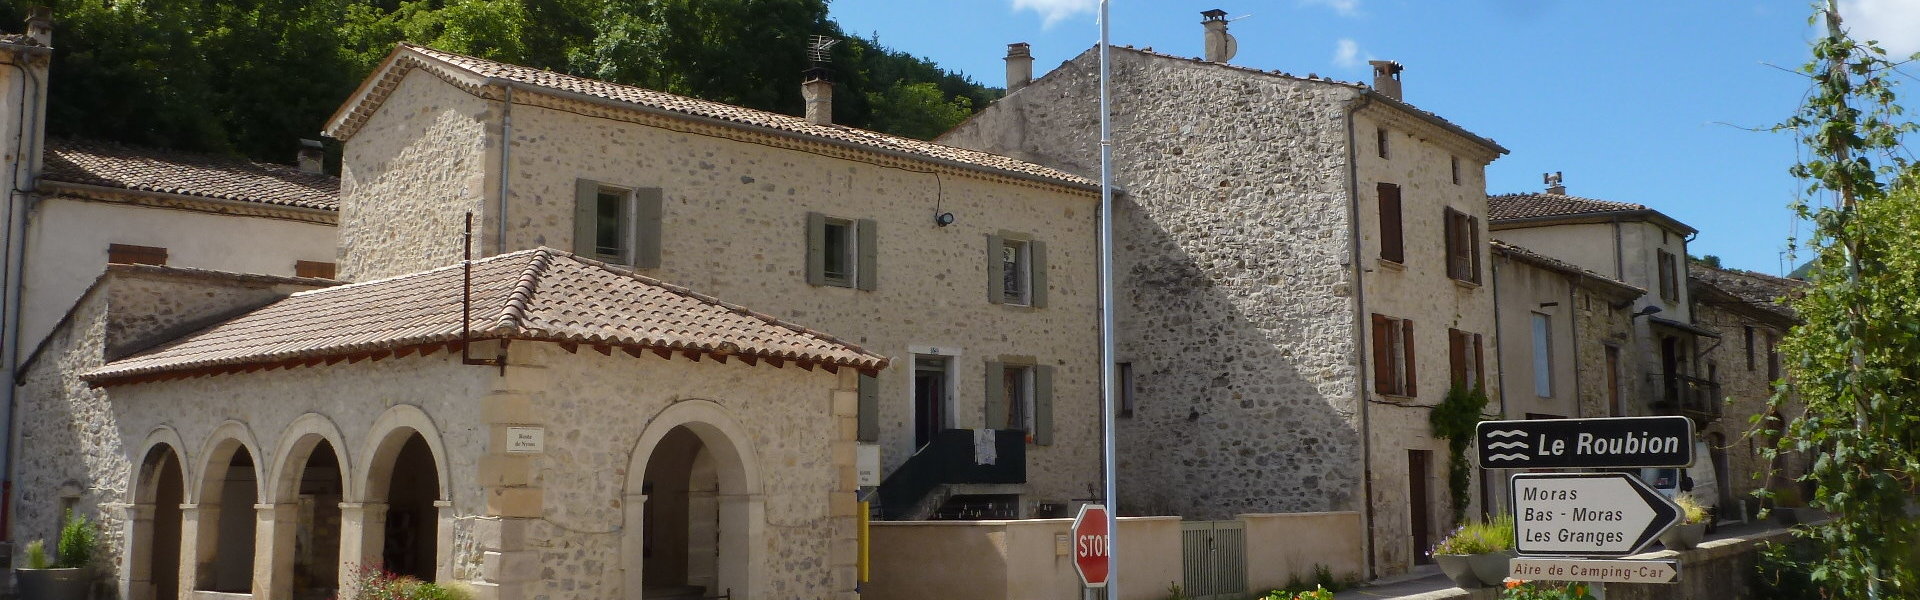 Les commissions - Commune de Bouvières - Département de la Drôme